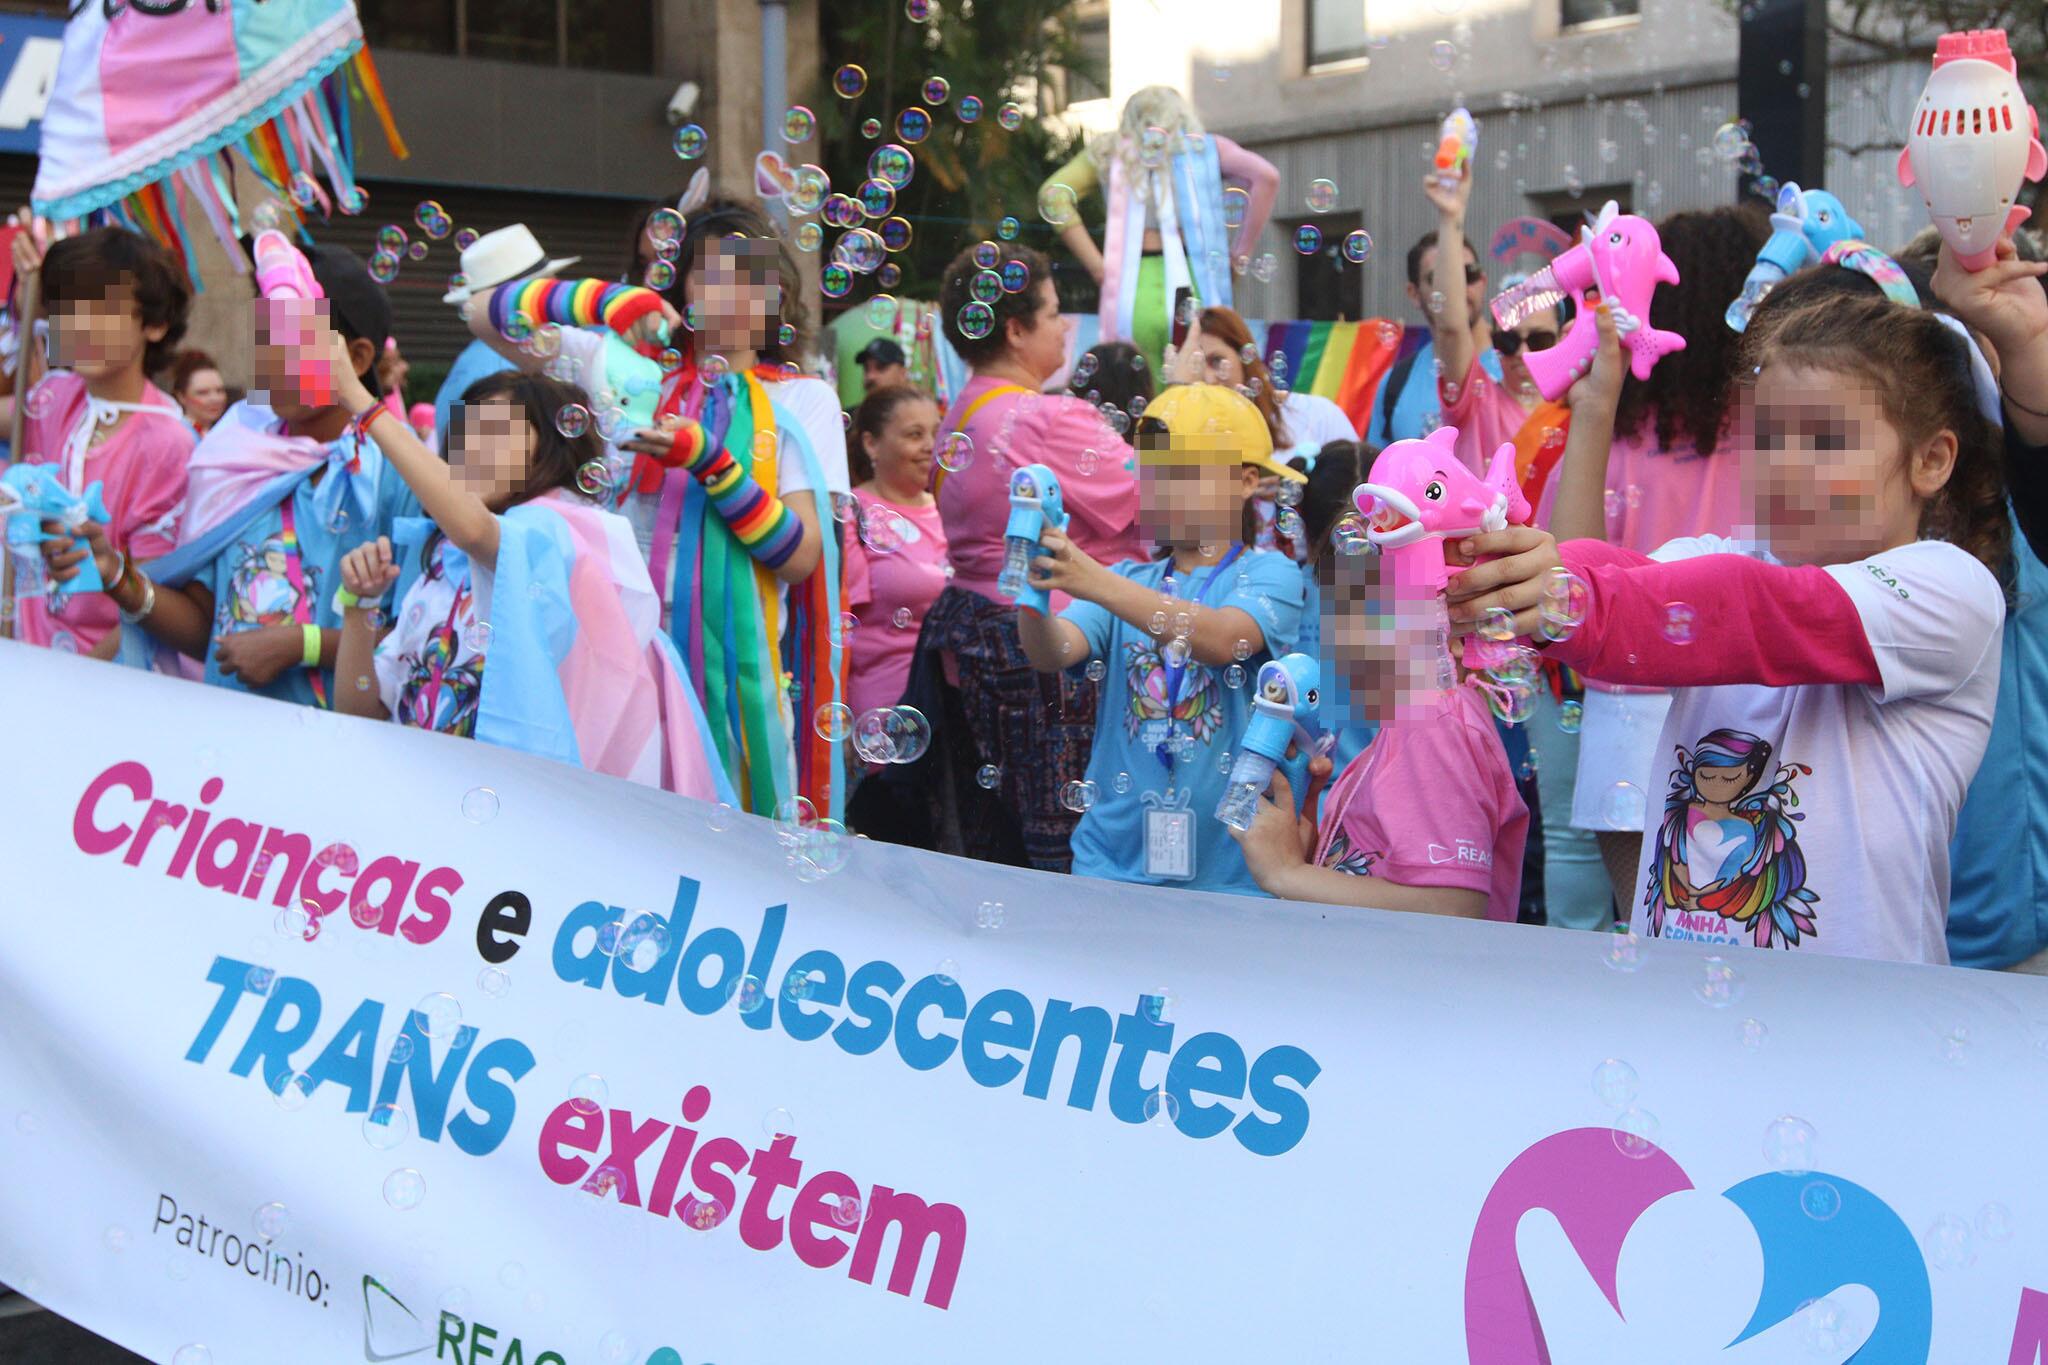 Crianças vestidas com as cores da bandeira trans (rosa claro, azul claro e branco) seguram cartaz com a frase ‘Crianças e adolescentes trans existem’ durante a Parada do Orgulho LGBT de 2023 em São Paulo